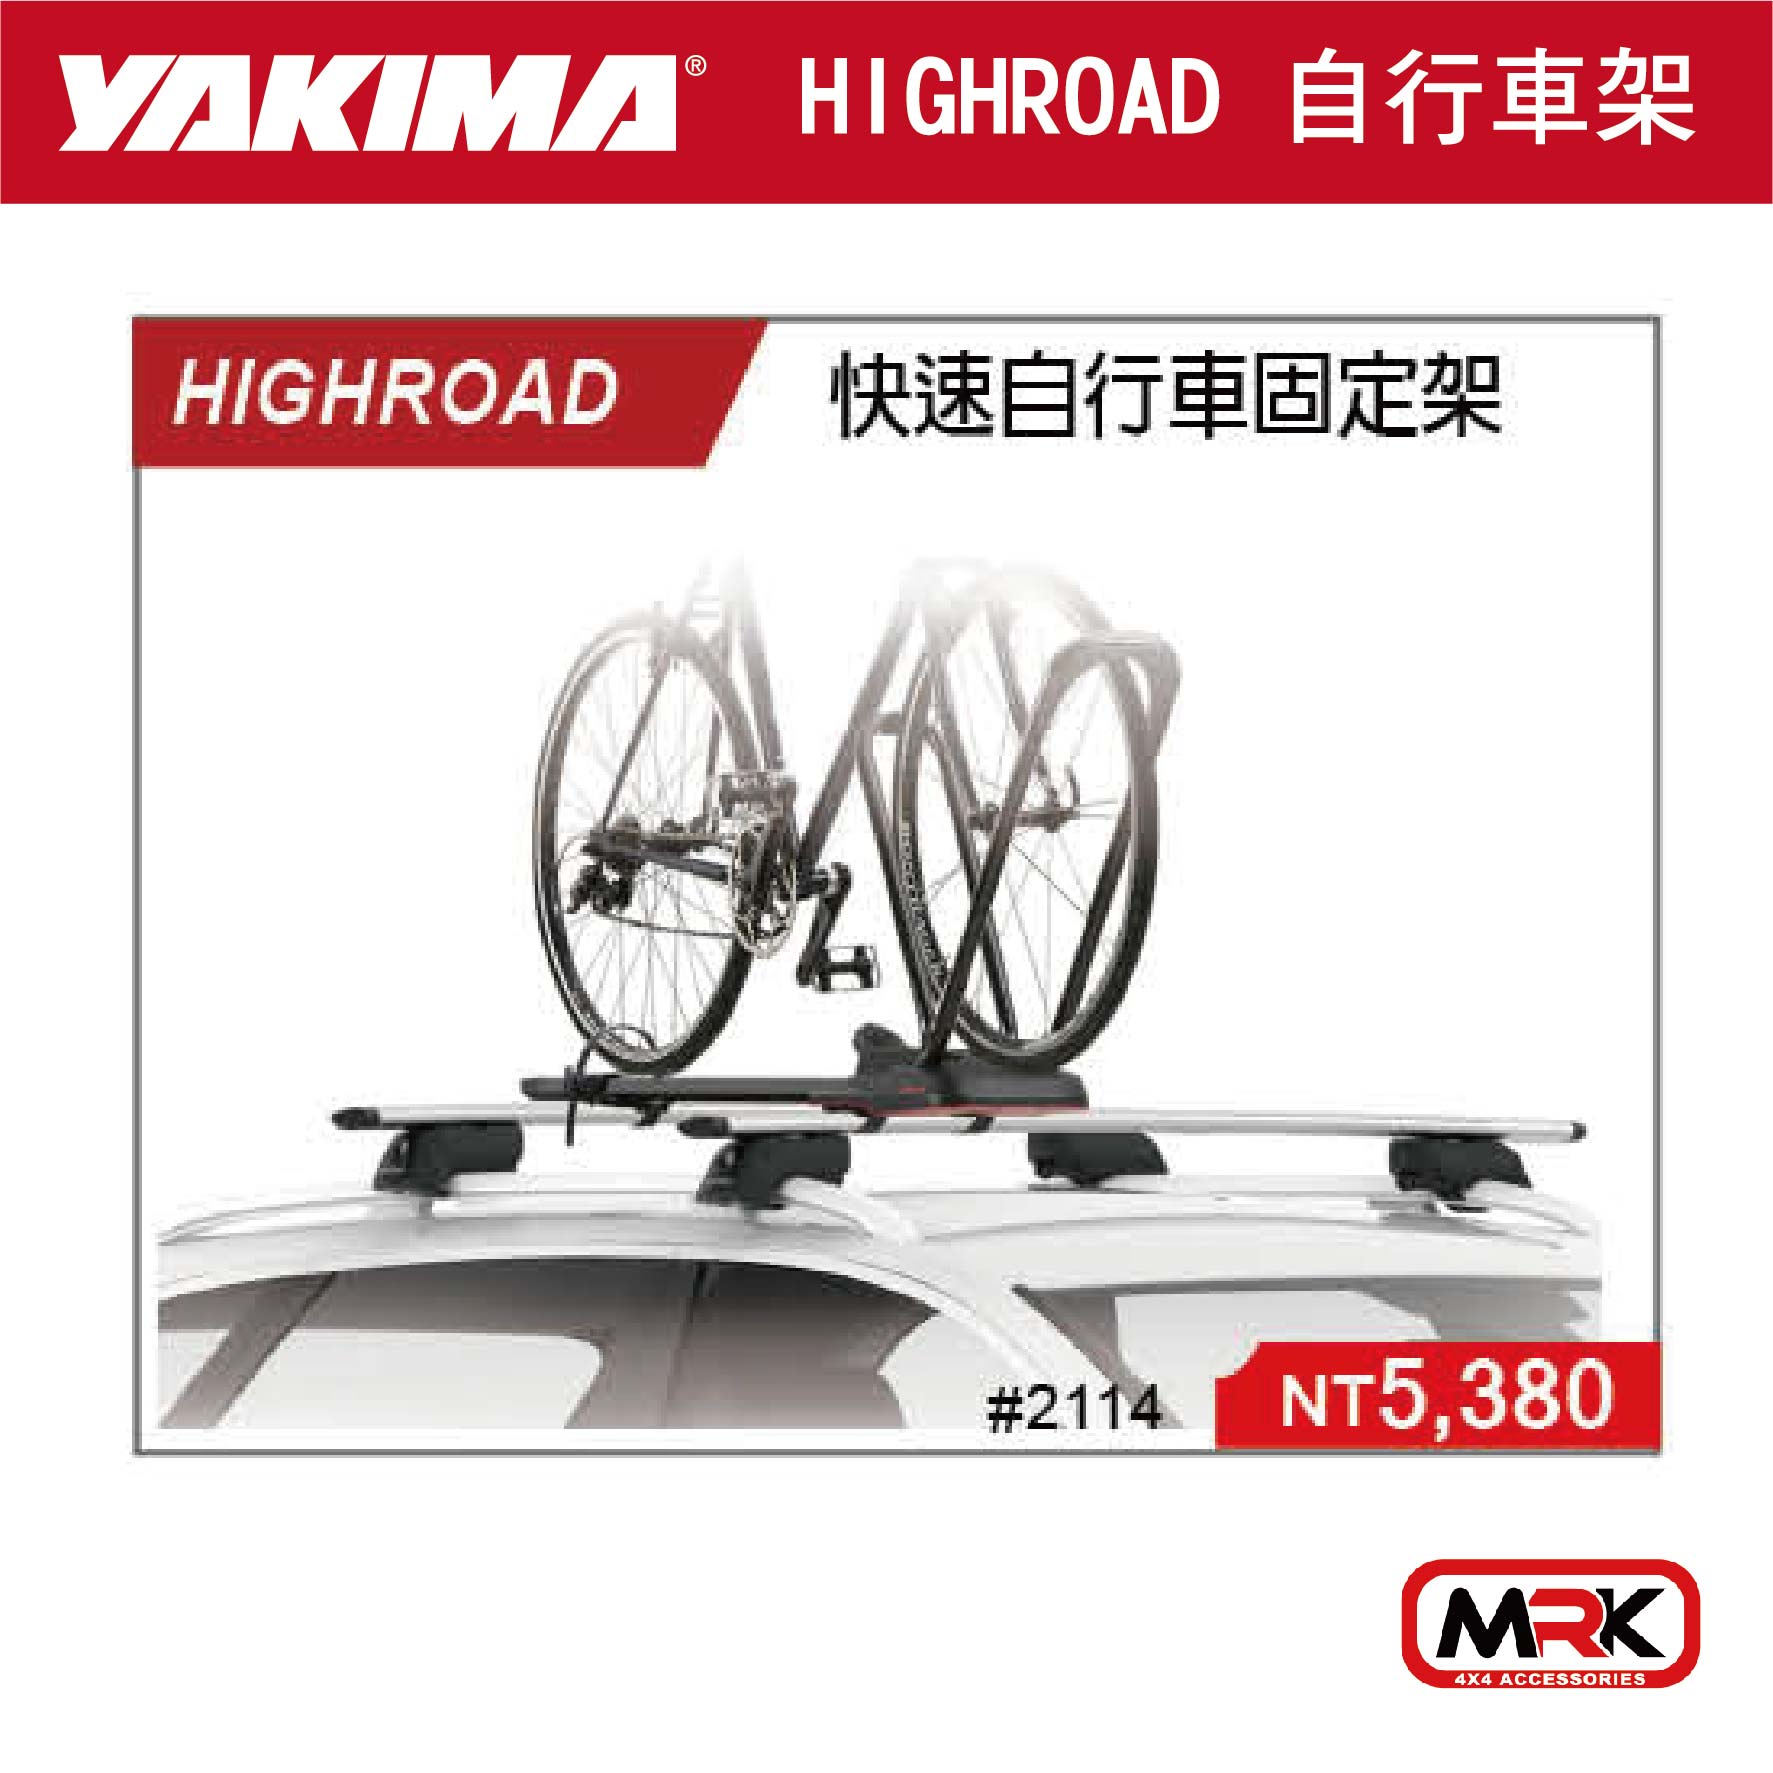 【MRK】YAKIMA HIGHROAD 快速 自行車固定架 自行車攜車架 2114